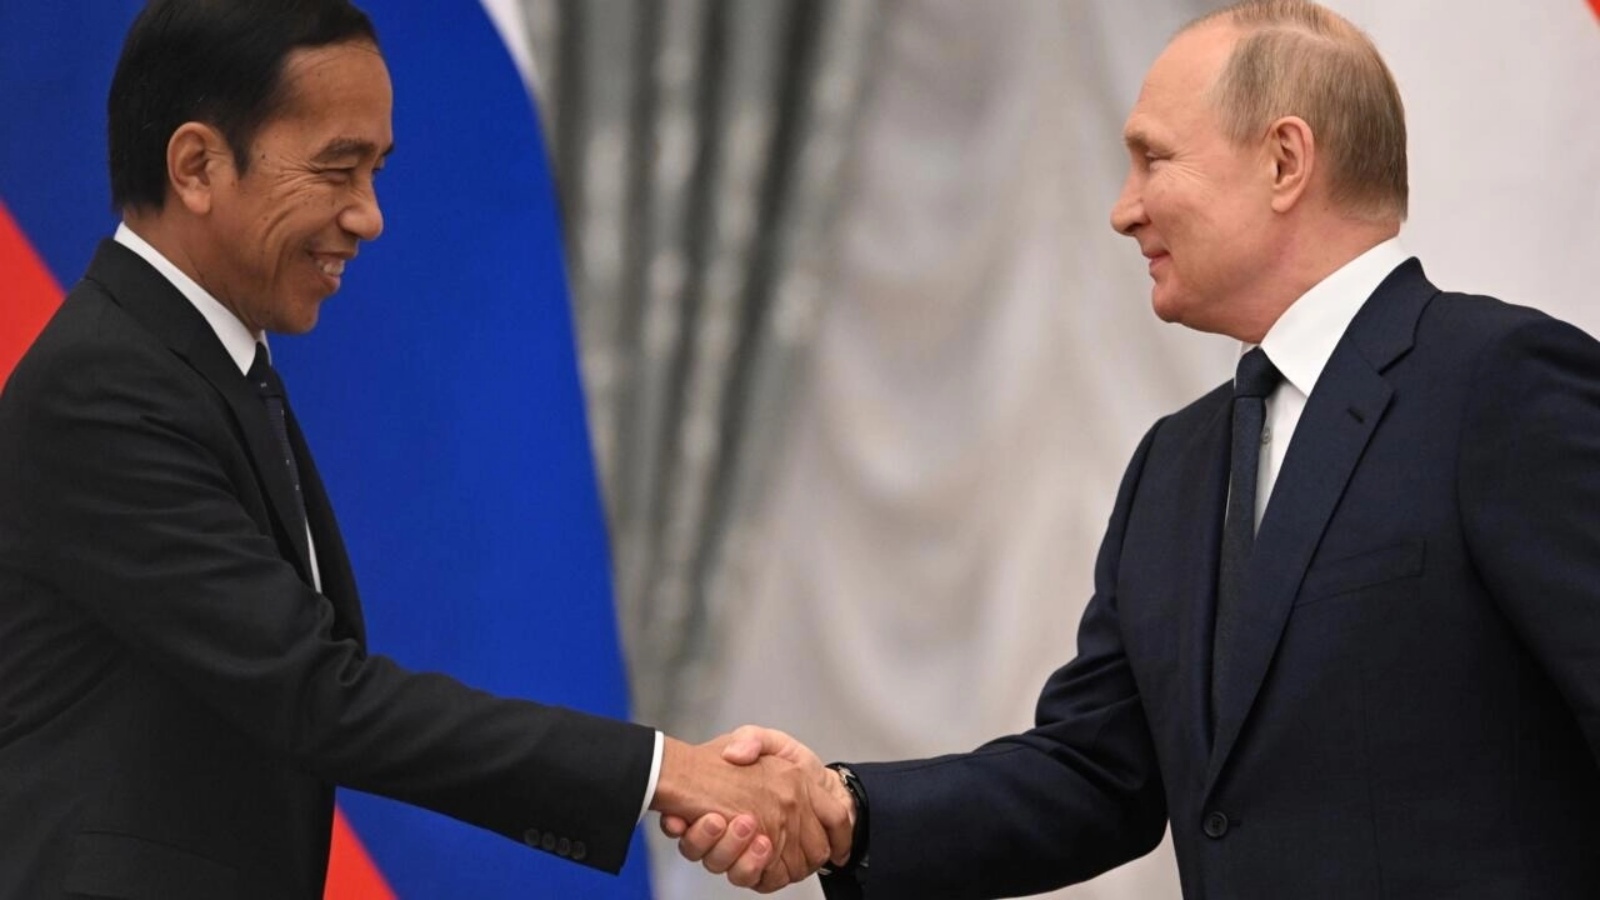 ويدودو التقى ببوتين في روسيا لكن الزعيم الروسي لن يحضر قمة مجموعة العشرين في إندونيسيا